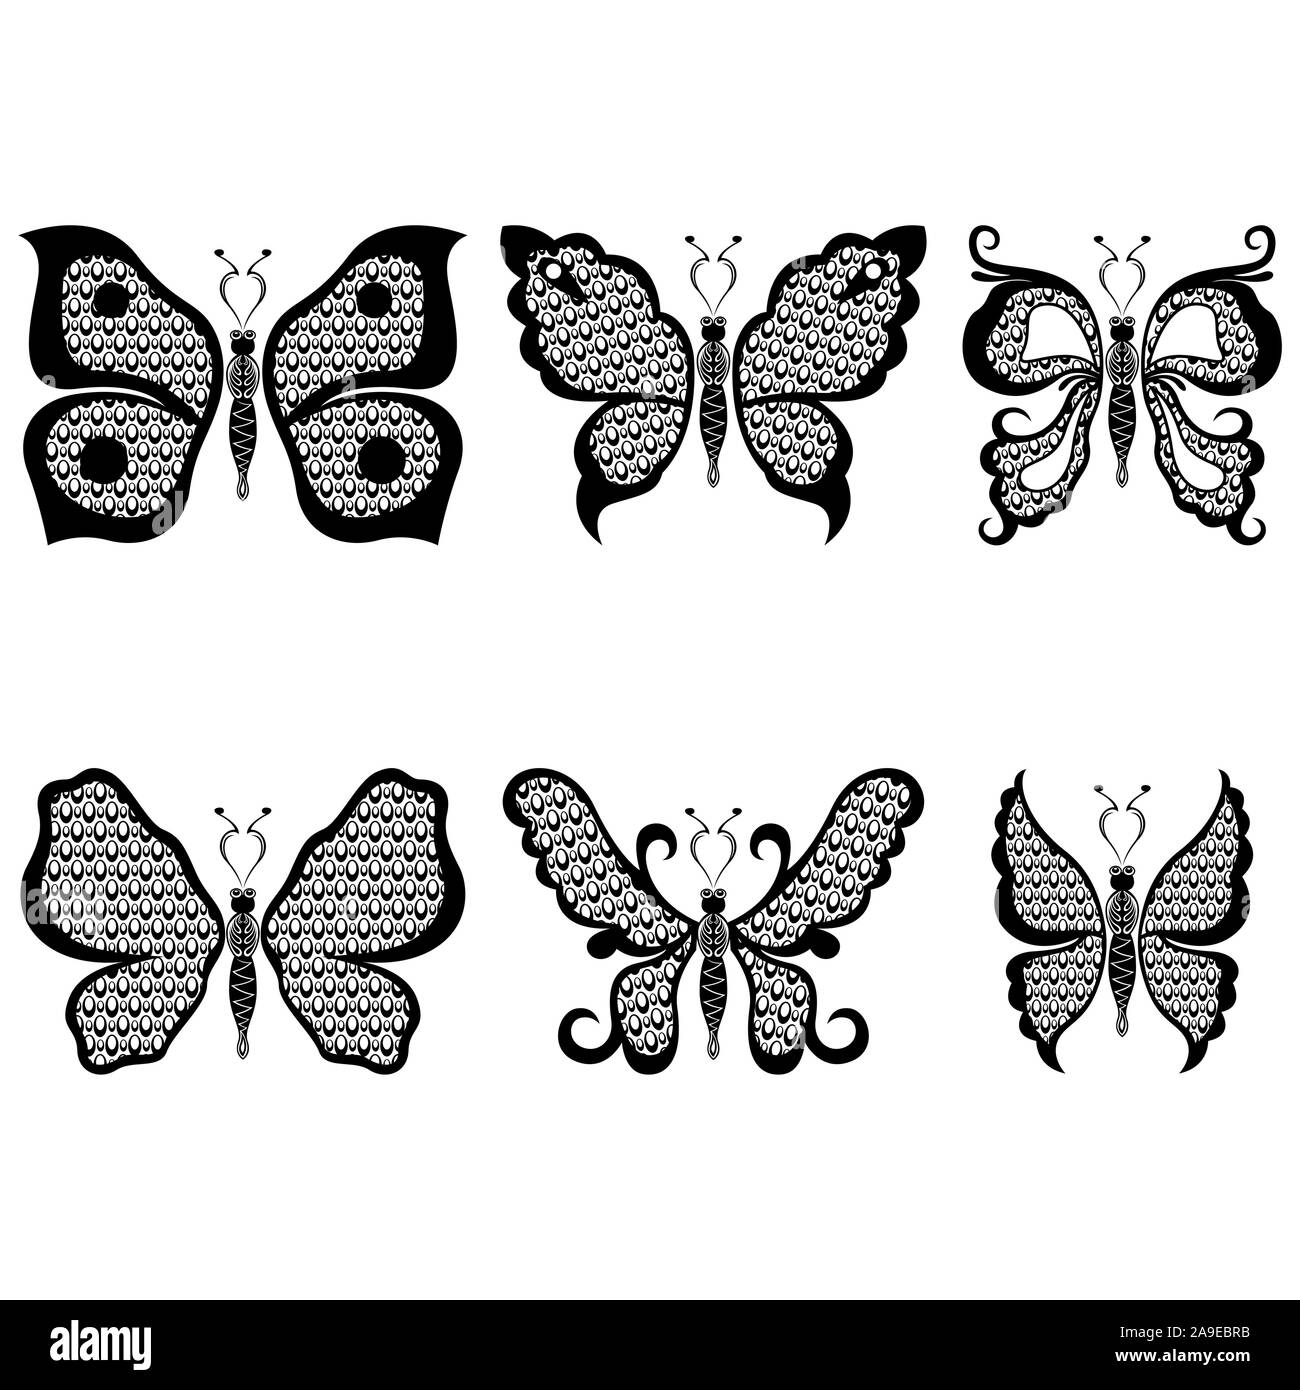 Satz von sechs Schablonen der schöne schwarze Schmetterlinge mit Kreis Elemente auf einem weißen Hintergrund, von Hand zeichnen Abbildung Stock Vektor